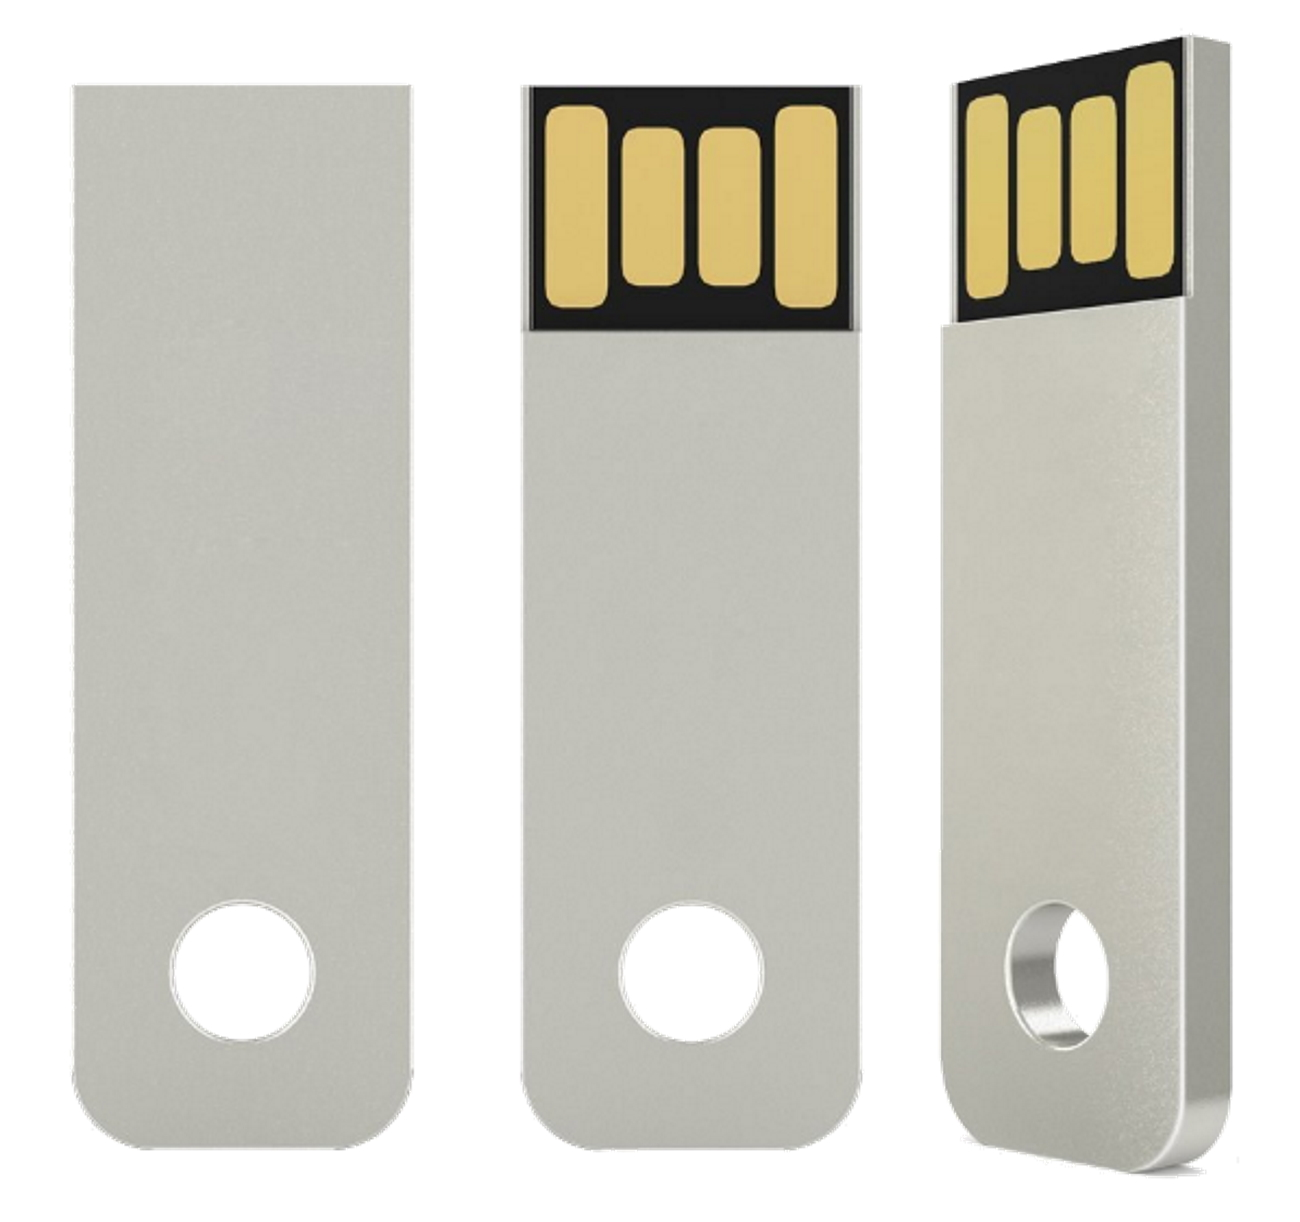 GERMANY USB GB) (Silber, 16 Key ®Mini USB-Stick